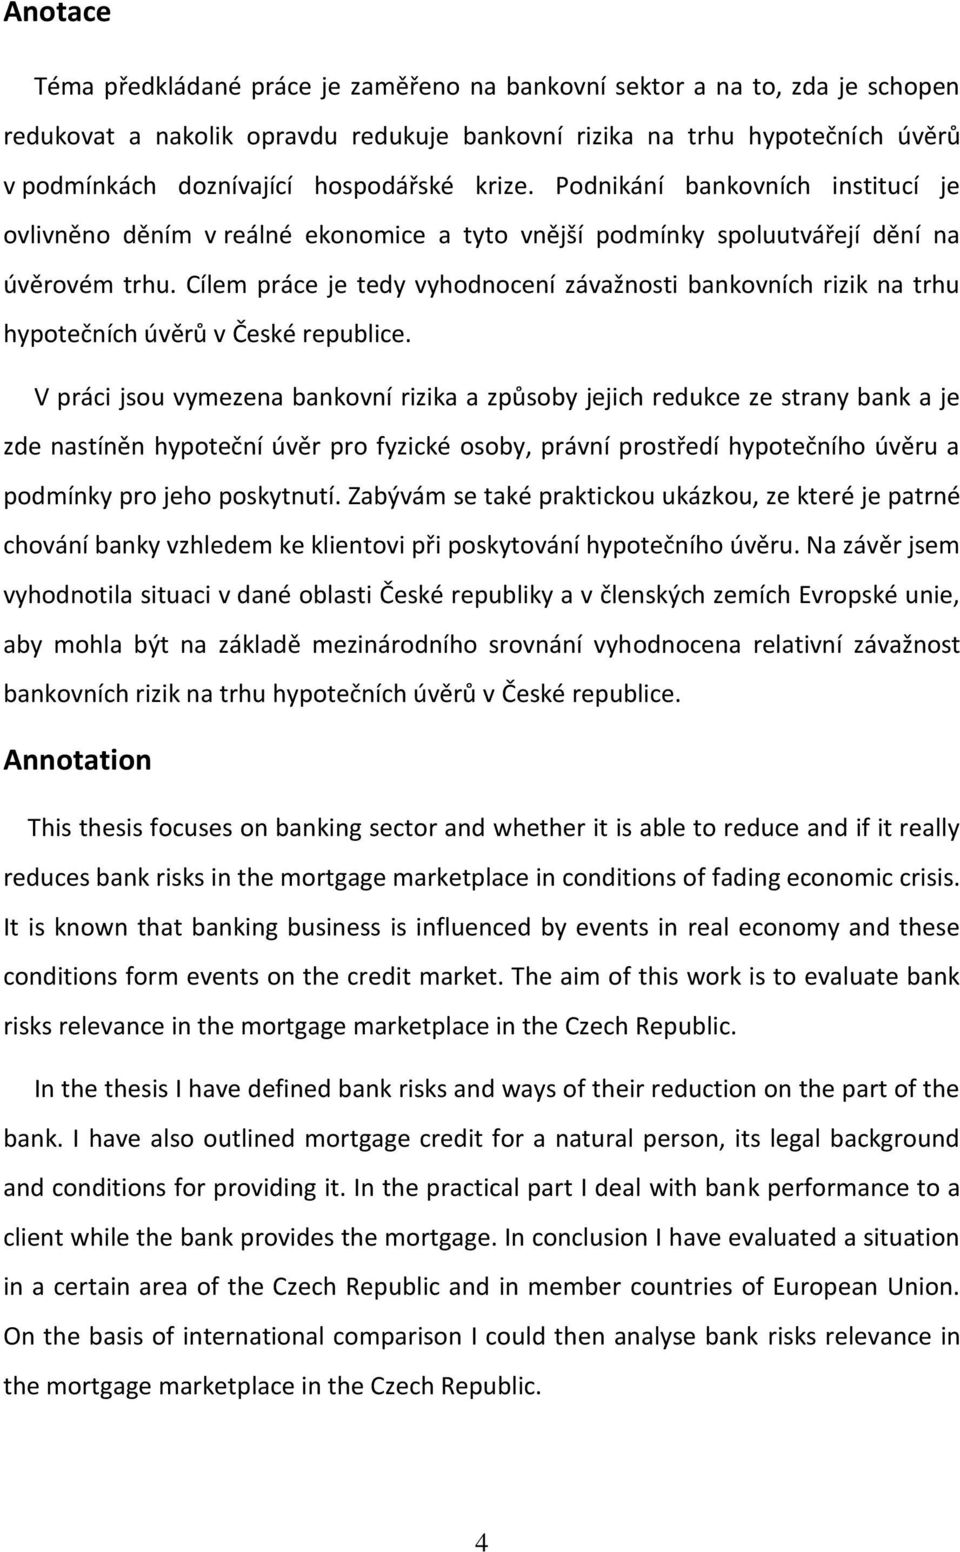 Cílem práce je tedy vyhodnocení závažnosti bankovních rizik na trhu hypotečních úvěrů v České republice.